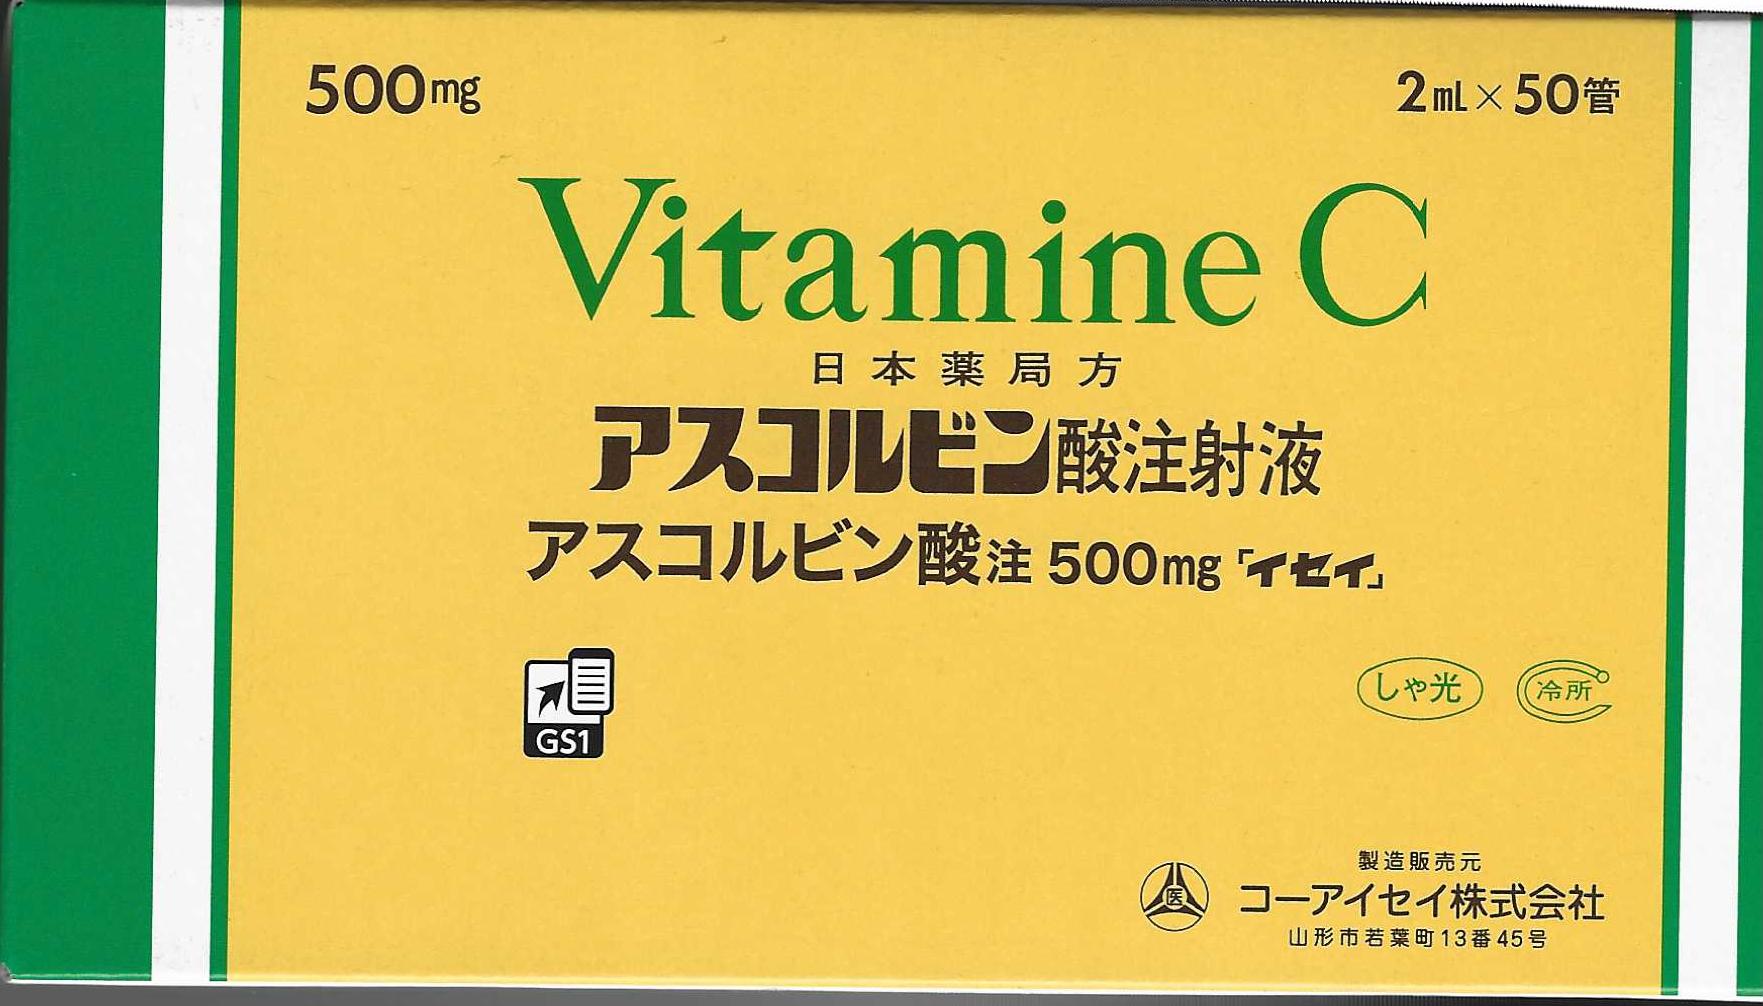 新款 日医工美白針VC 500mg Vitamine C
アスコルビン酸注射液
アスコルビン酸注 500mg 「イセイ」 - 5SKINLAB